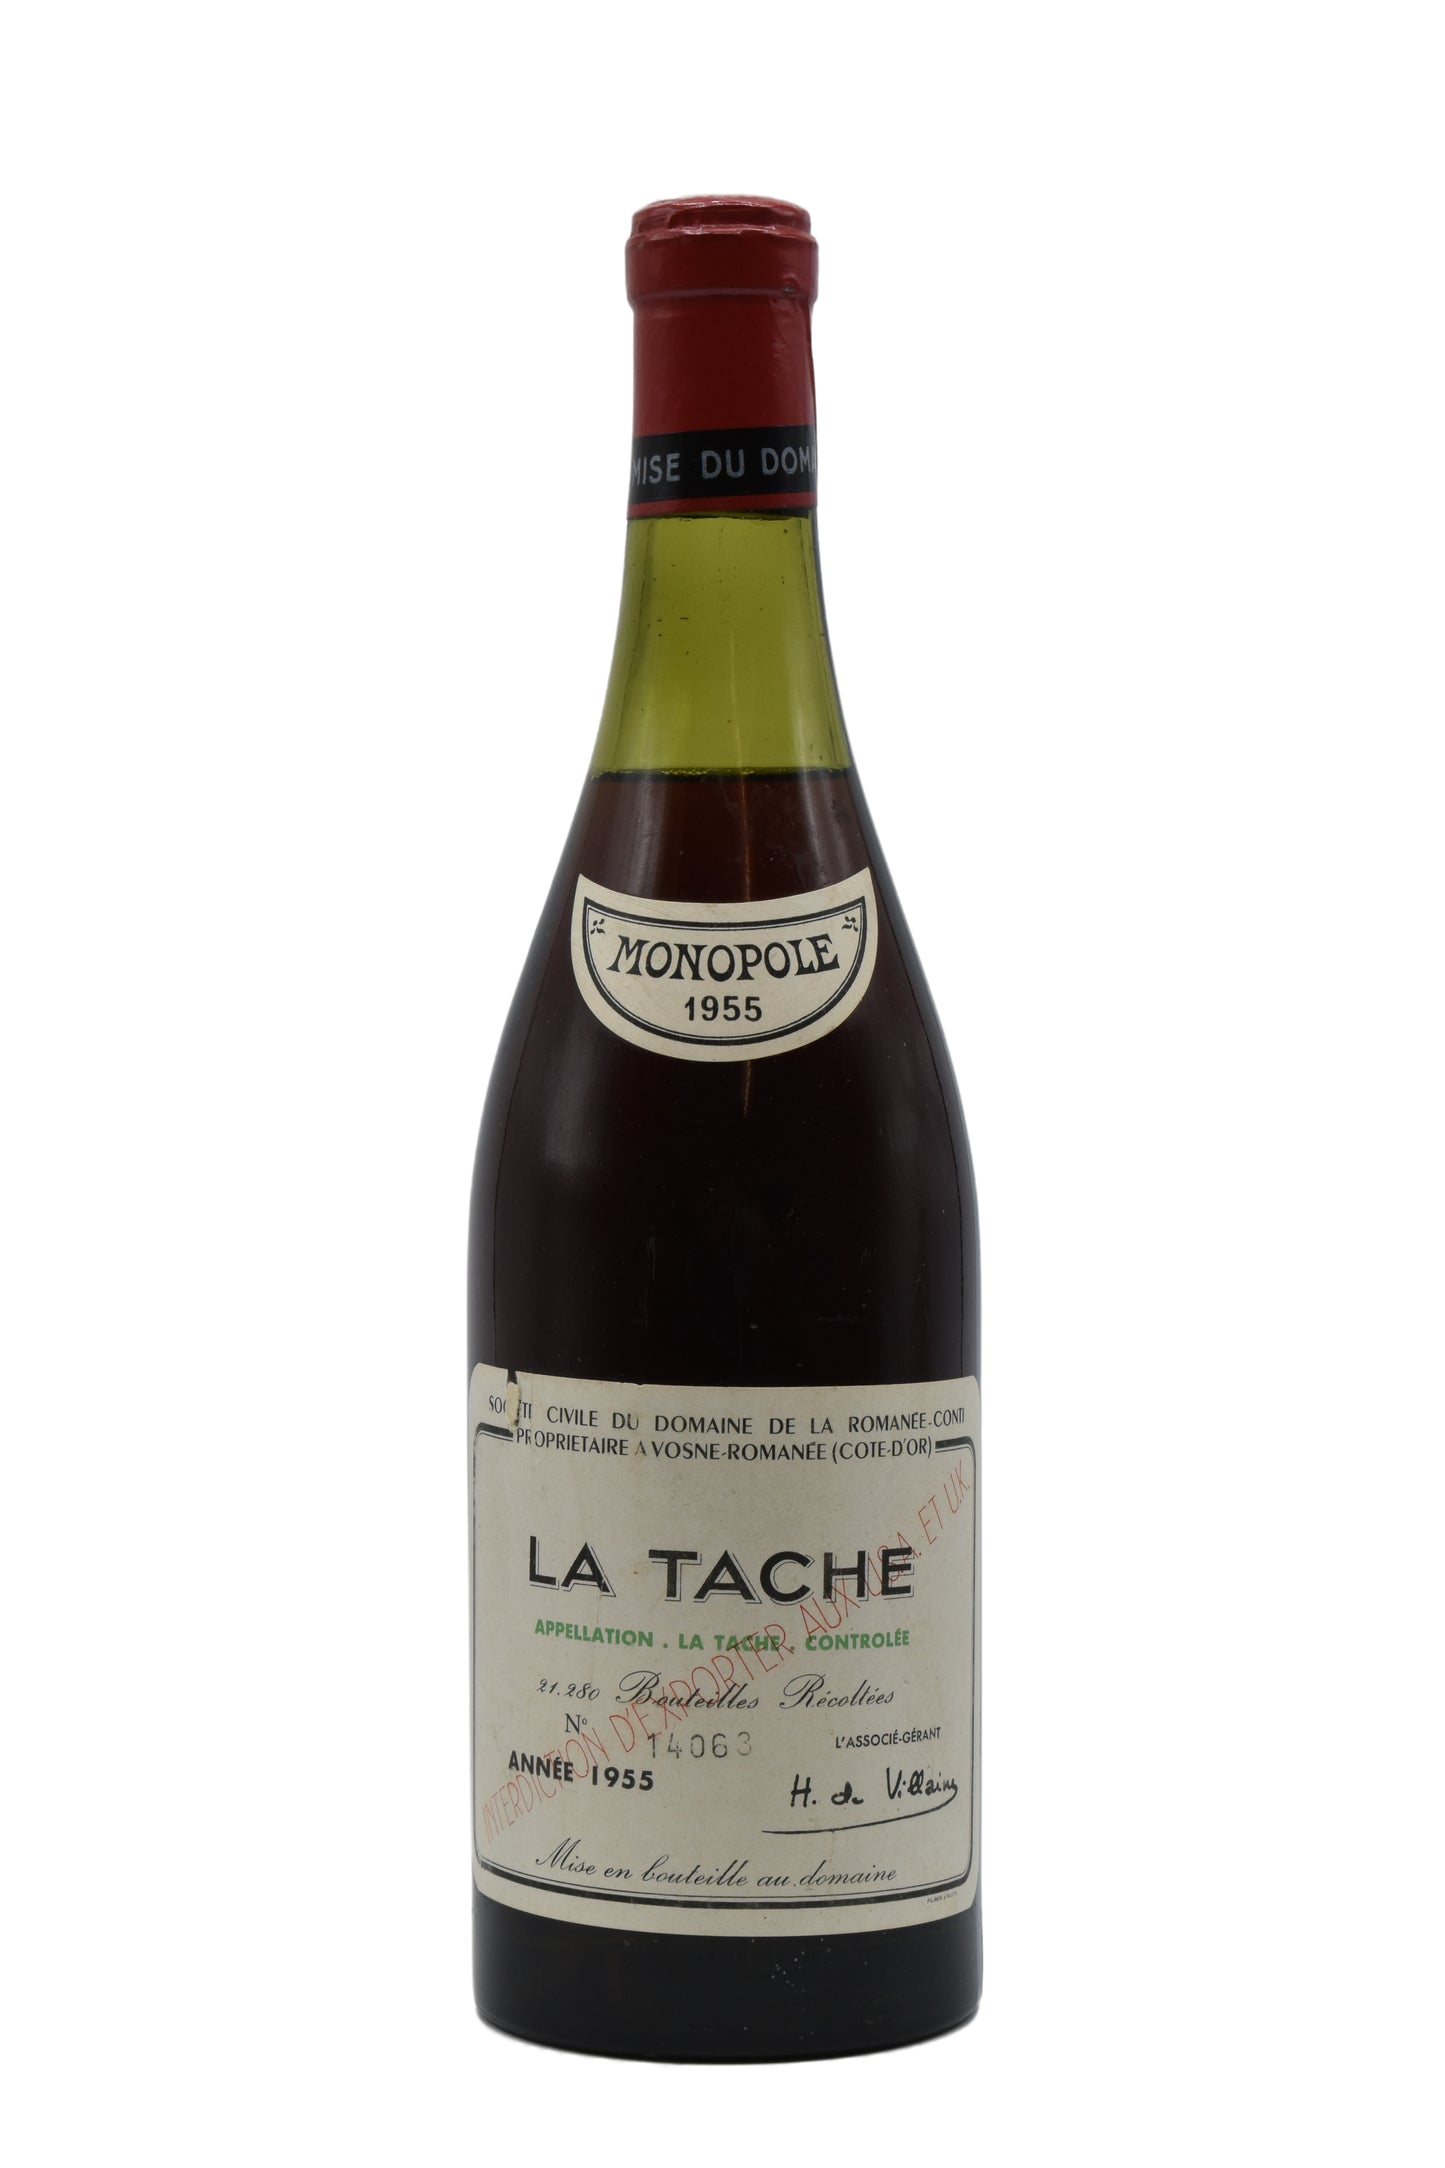 1955 Domaine de la Romanee-Conti, La Tache 750ml - Walker Wine Co.